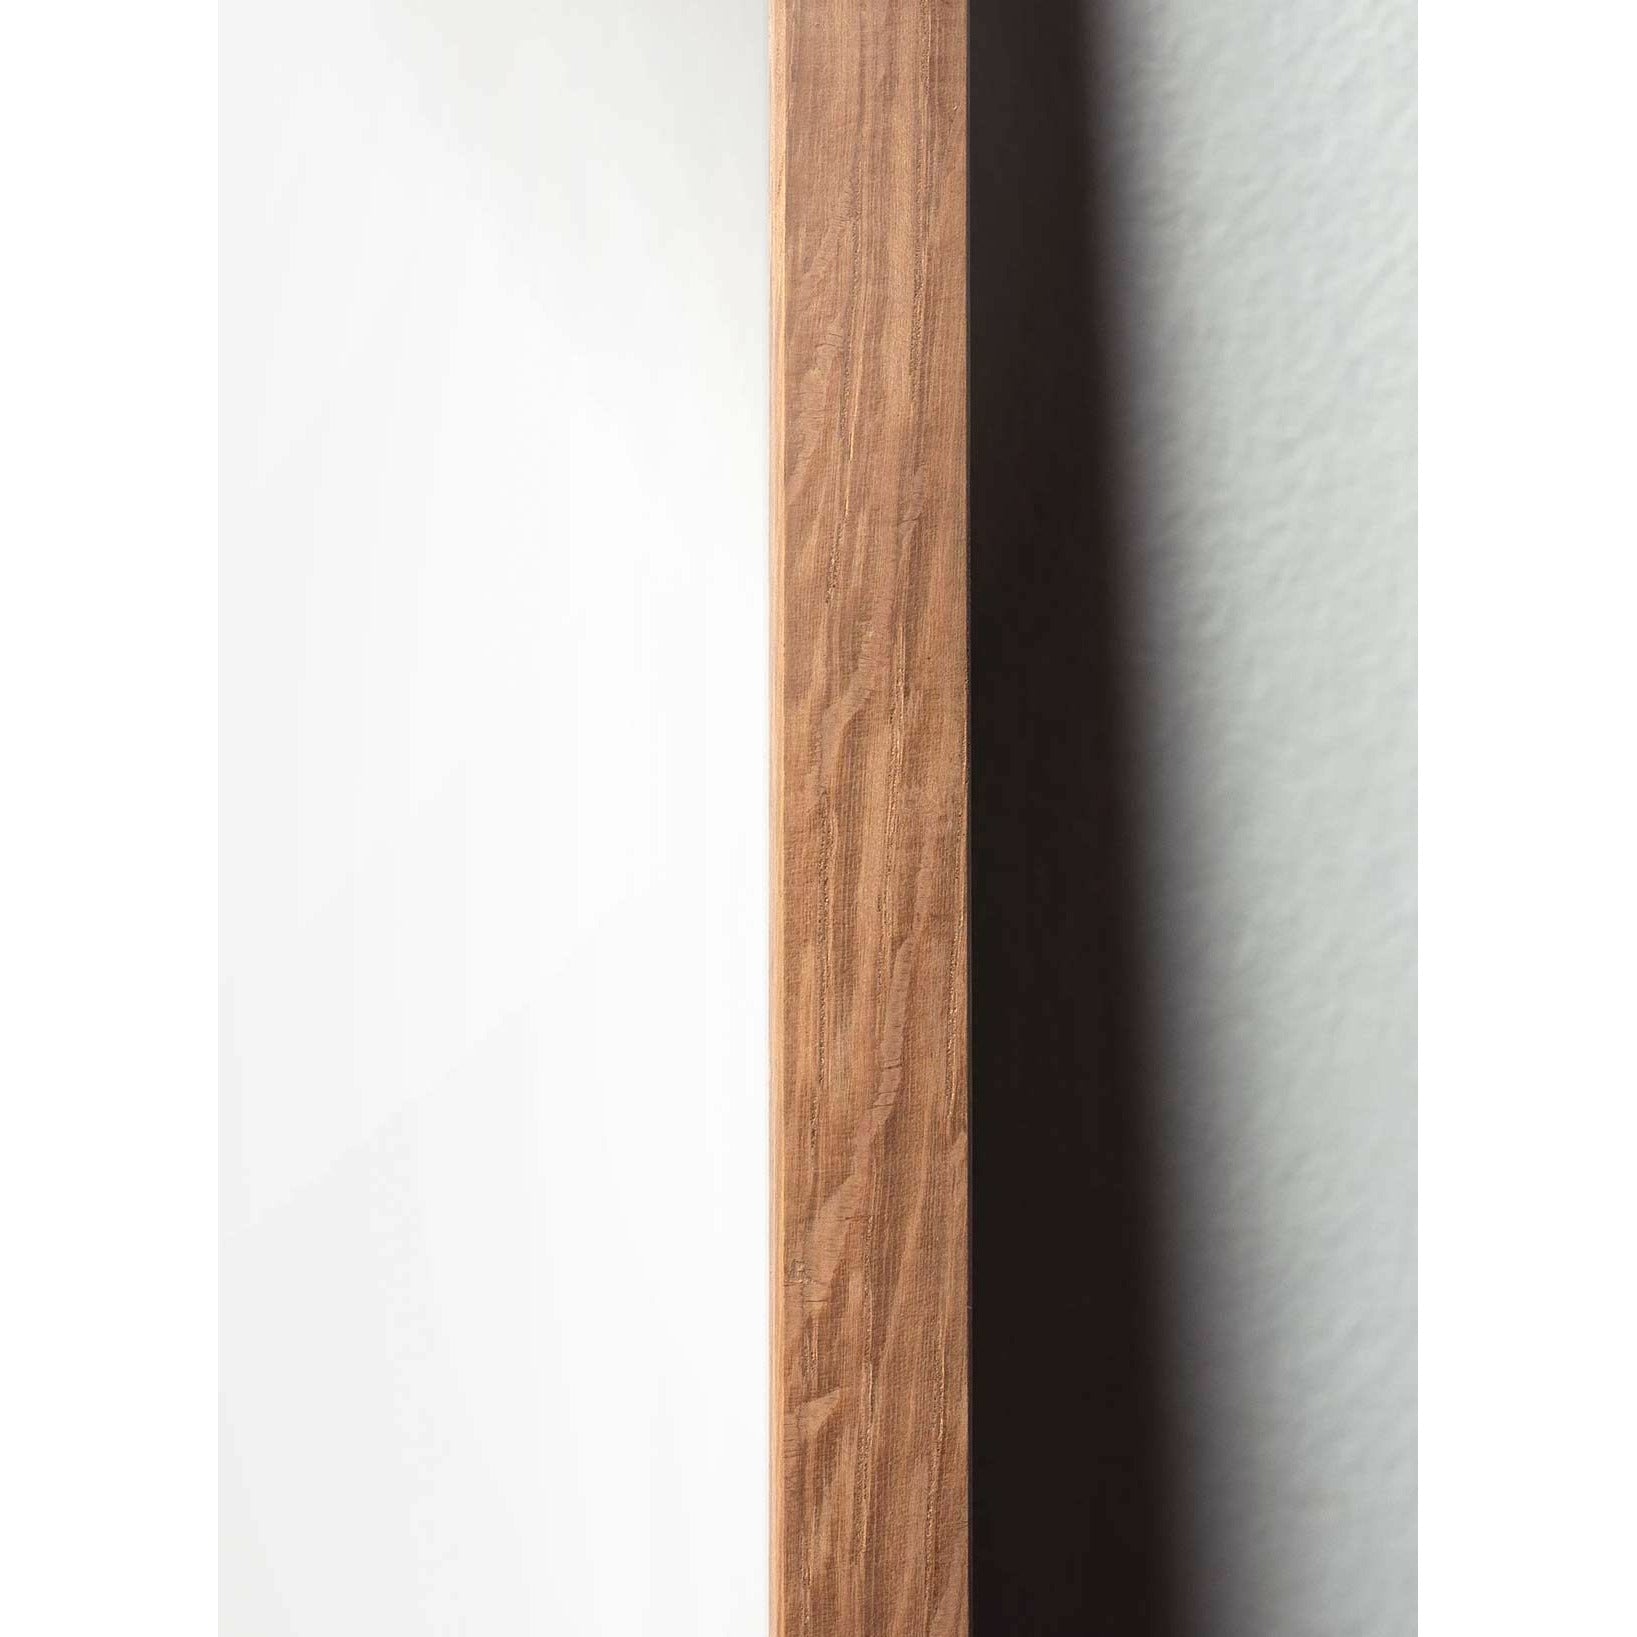 Póster clásico de Swan, marco hecho de madera clara 50x70 cm, fondo blanco/blanco